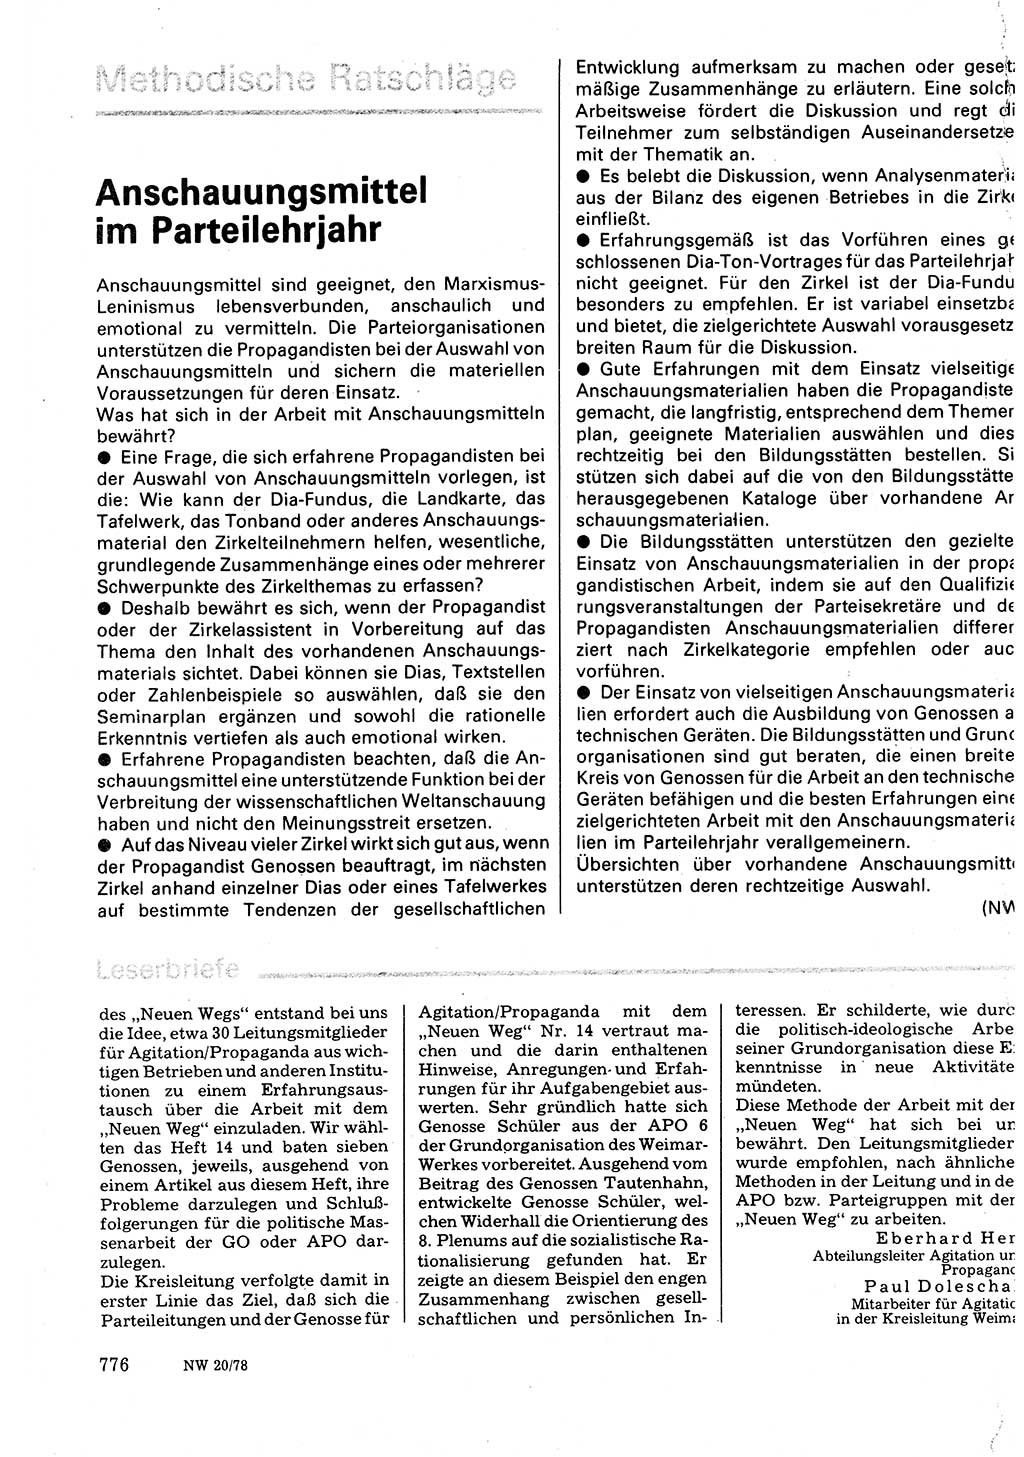 Neuer Weg (NW), Organ des Zentralkomitees (ZK) der SED (Sozialistische Einheitspartei Deutschlands) für Fragen des Parteilebens, 33. Jahrgang [Deutsche Demokratische Republik (DDR)] 1978, Seite 776 (NW ZK SED DDR 1978, S. 776)